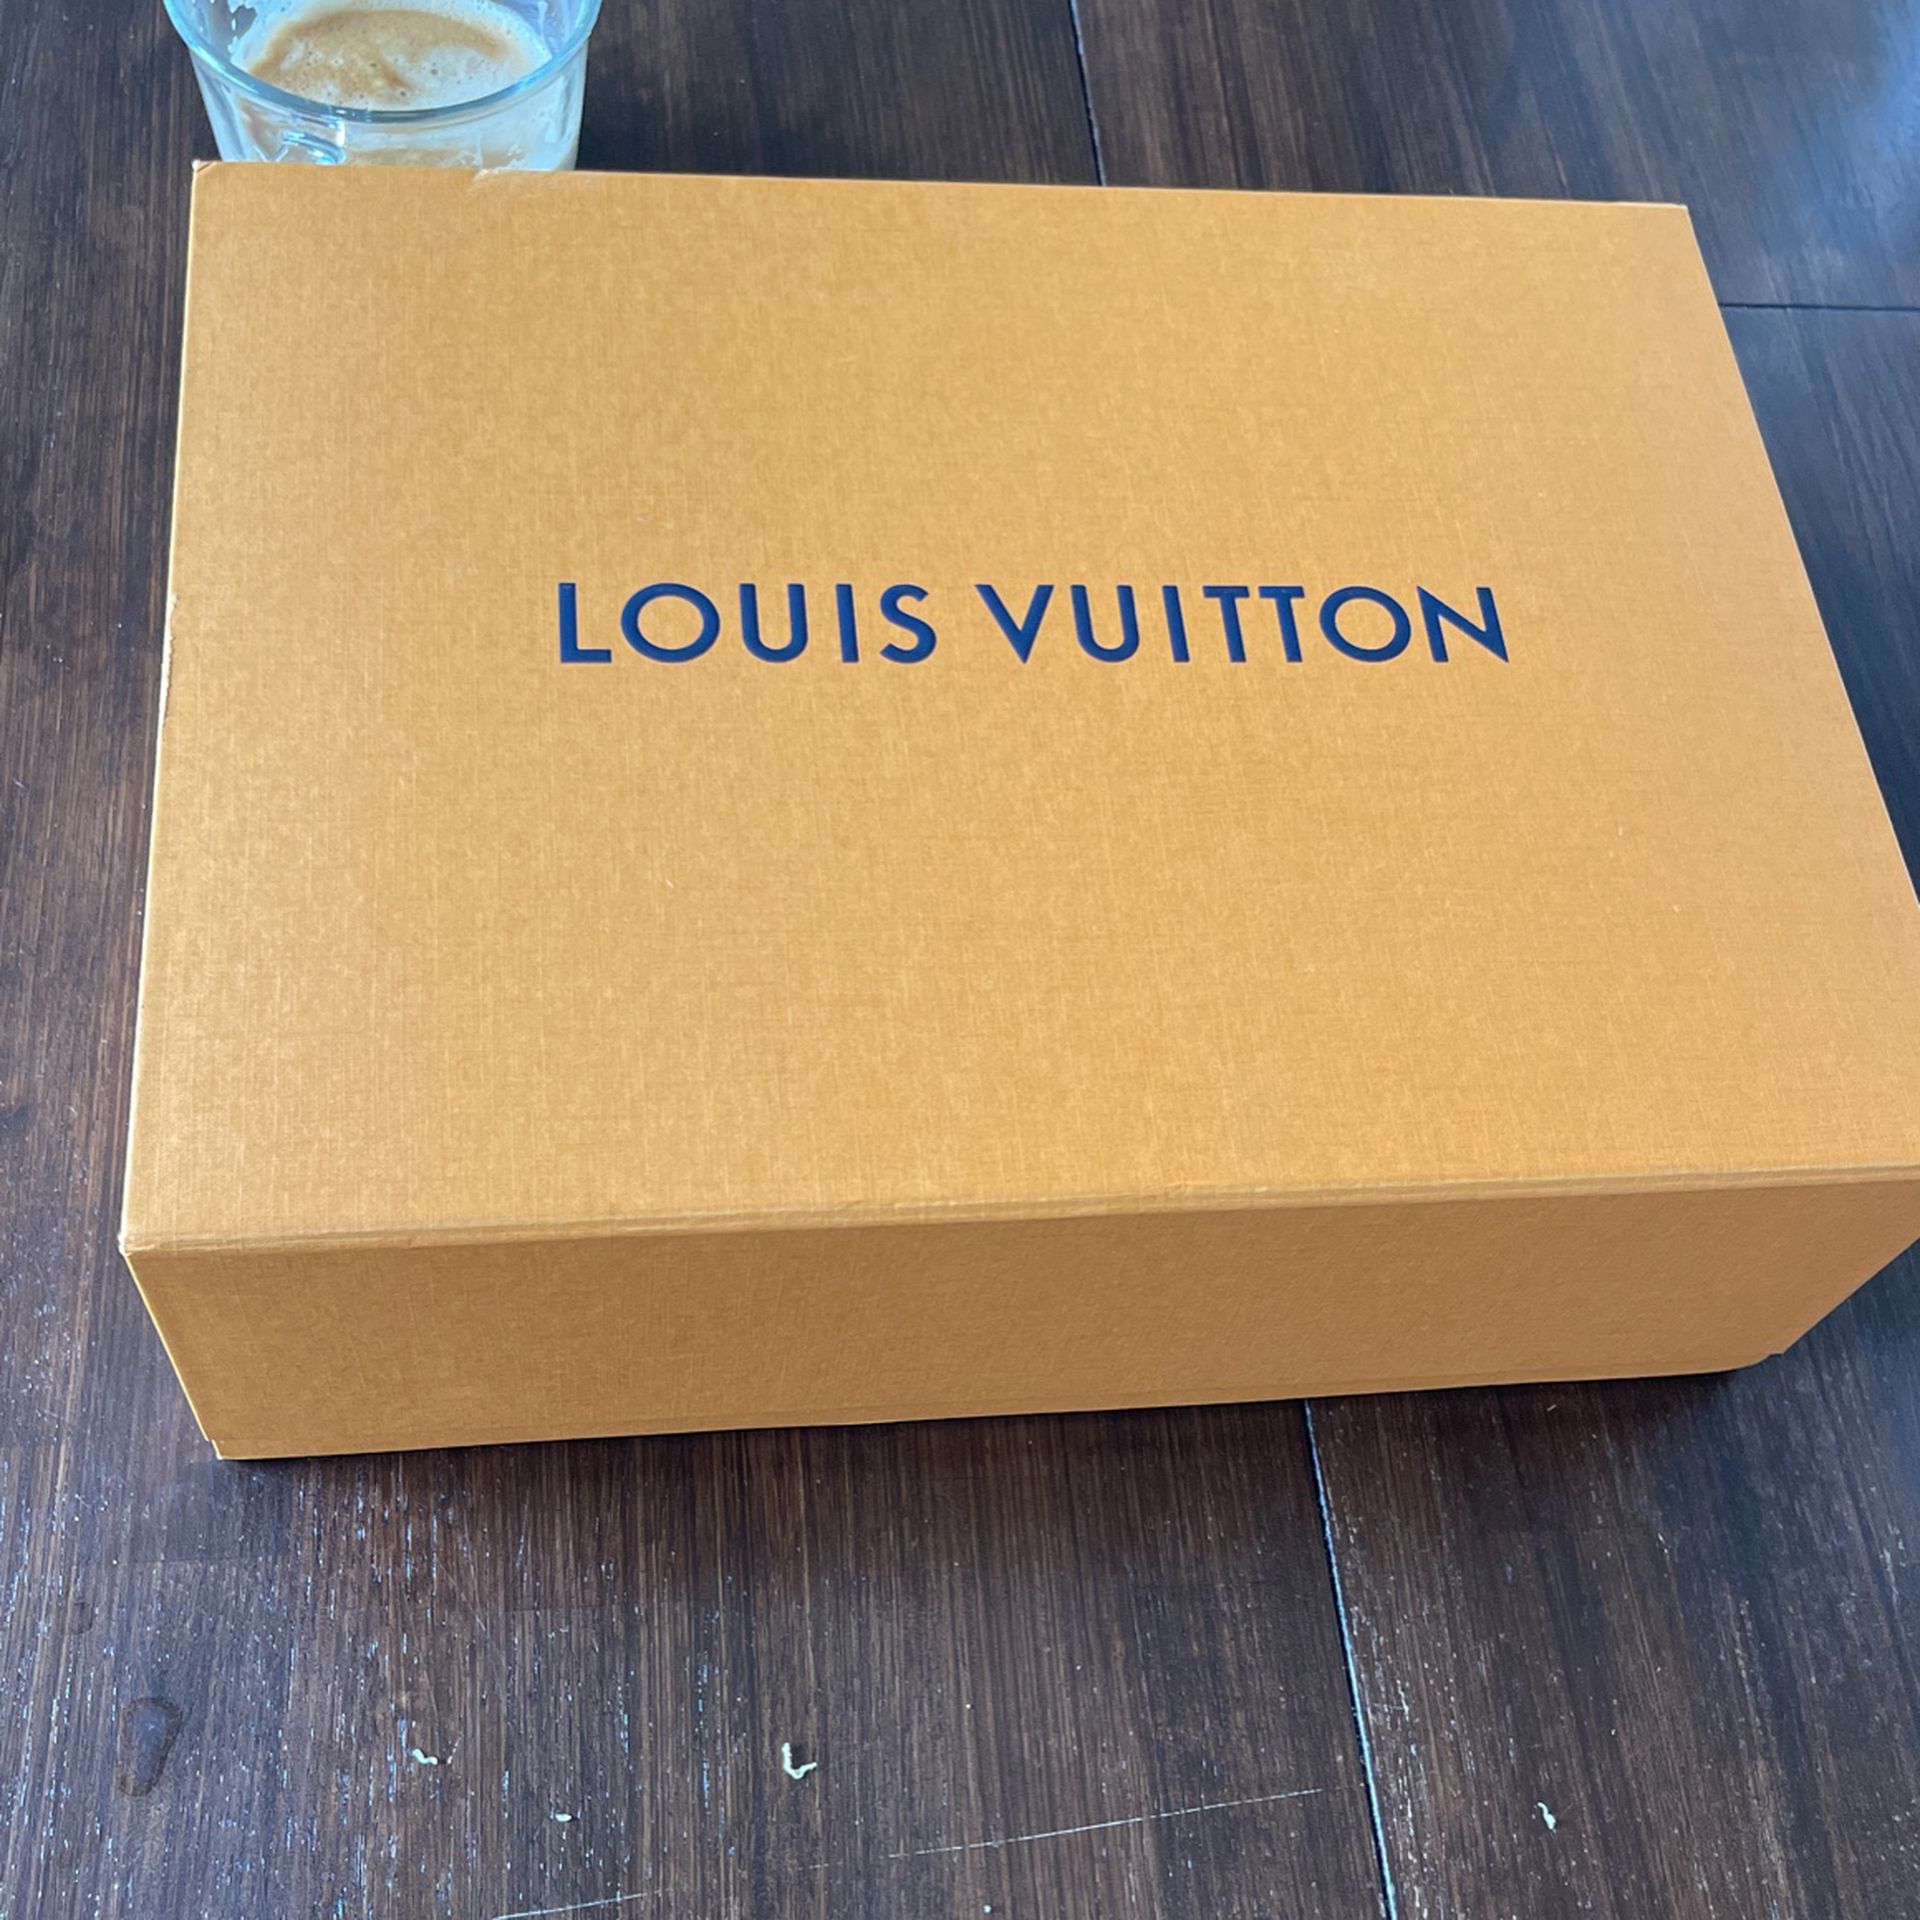 Authentic Louis Vuitton Vintage Bag for Sale in Bonita, CA - OfferUp